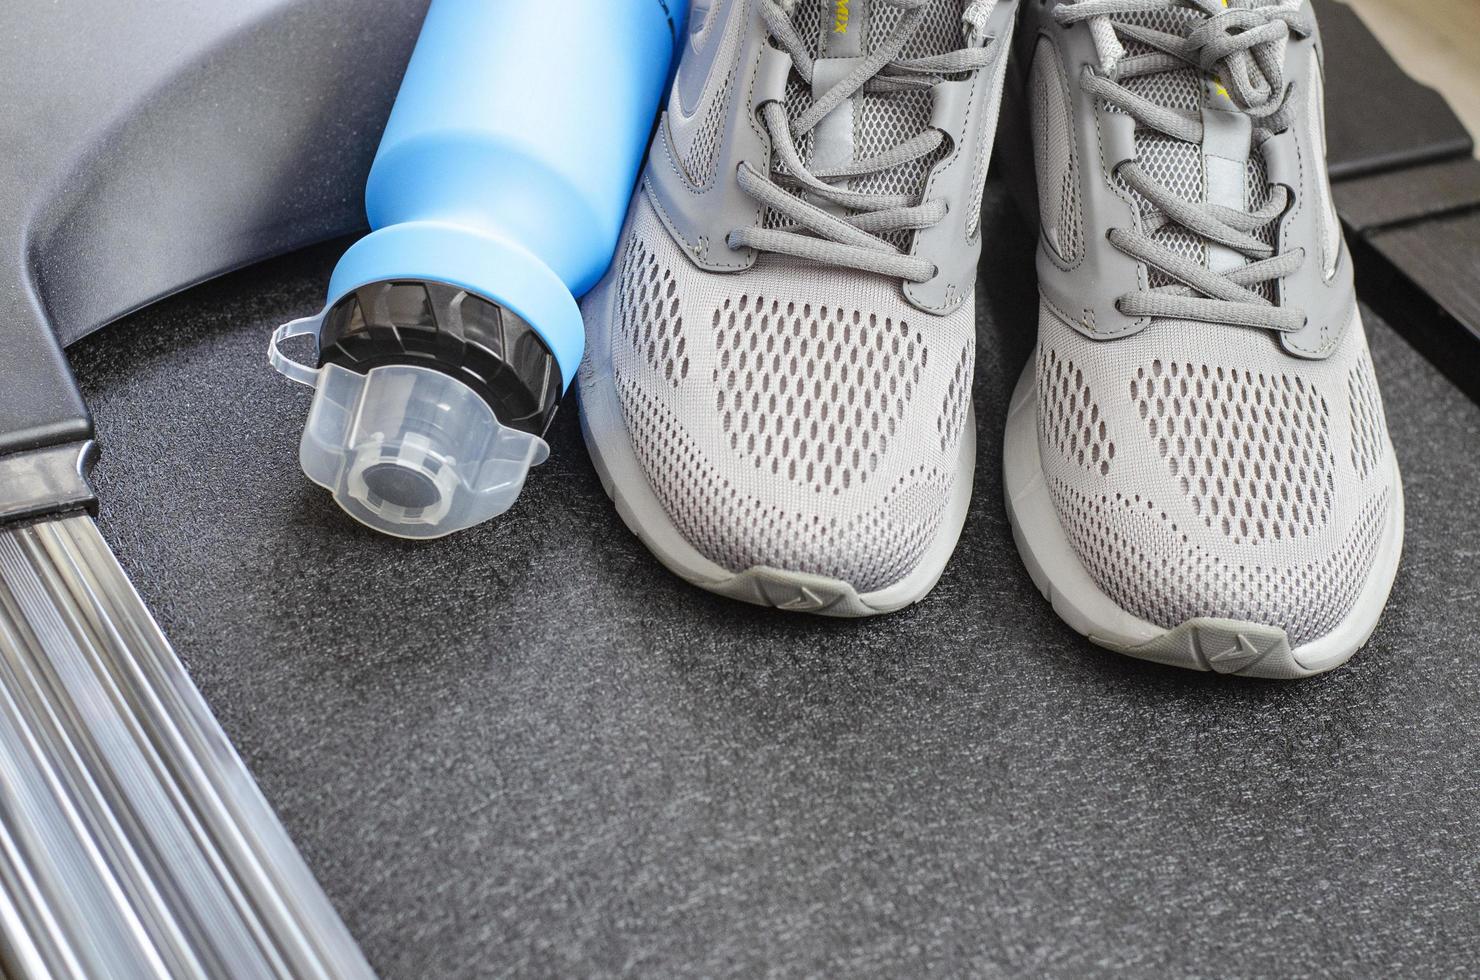 pista da corsa con scarpe da ginnastica e bottiglia d'acqua su sfondo nero. strumenti di esercizio per la salute. foto in studio